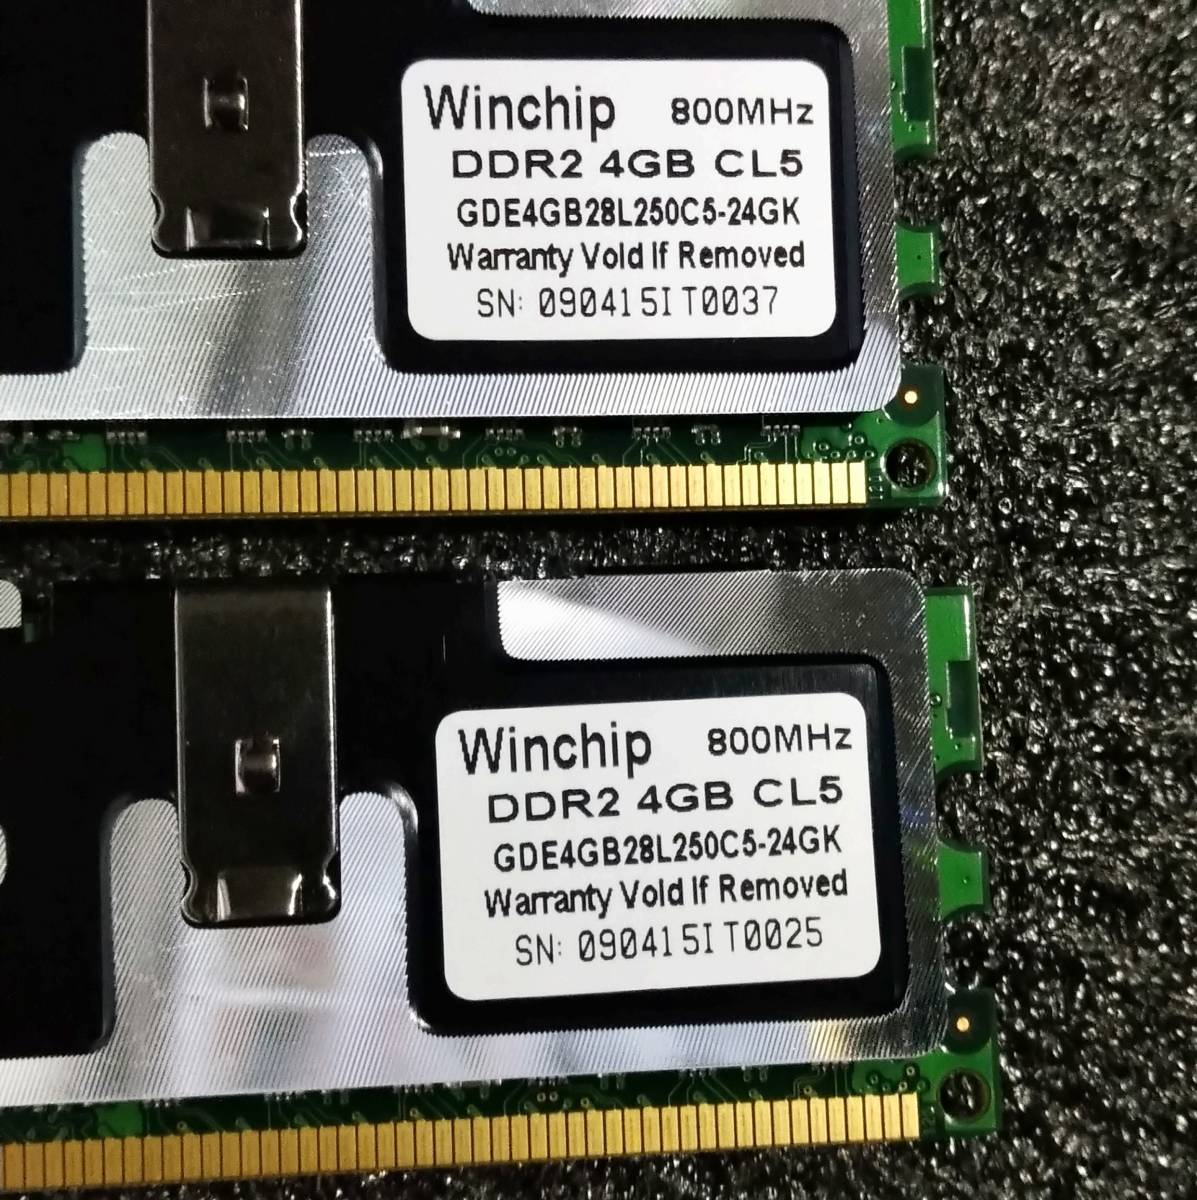 中古】DDR2メモリ16GB(4GB4枚組) Whinchip GDE4GB28L250C5-24GK [DDR2